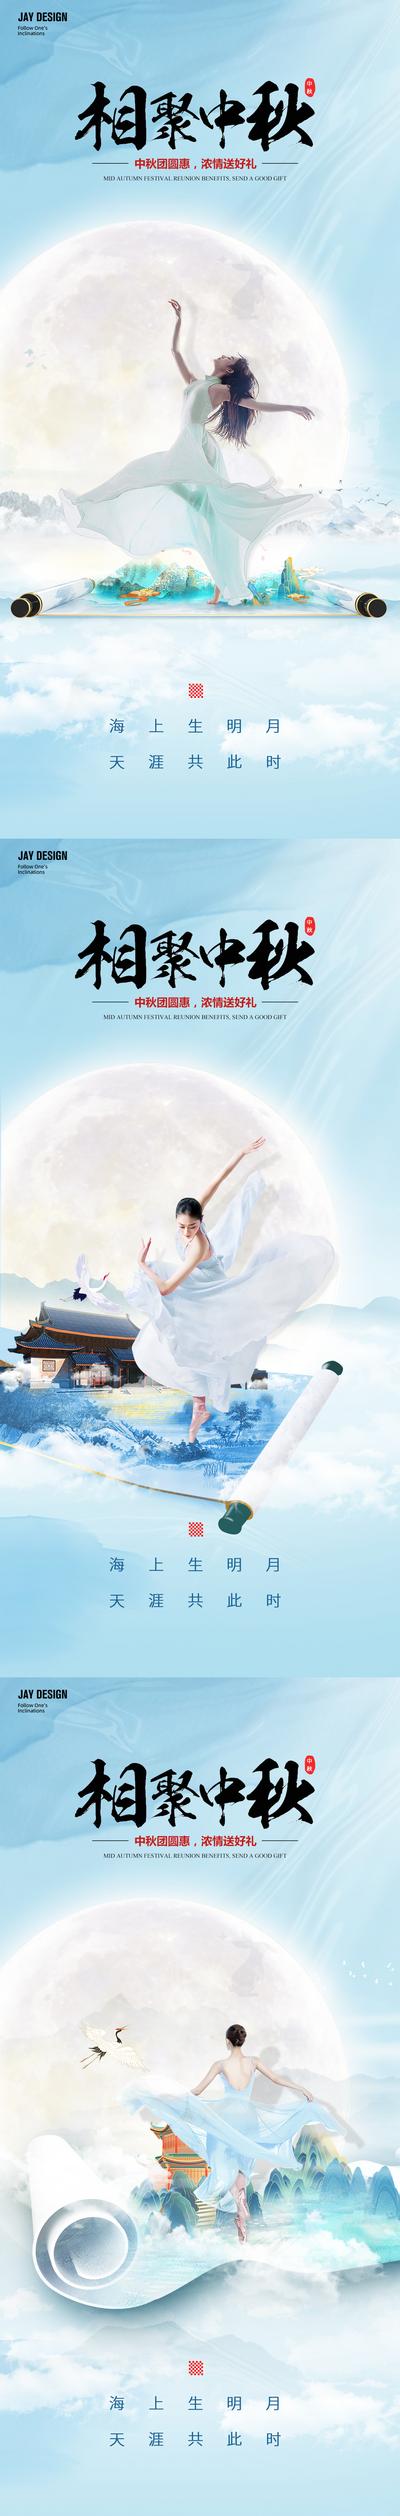 南门网 广告 海报 医美 活动 节日 中式 中国风 创意 系列